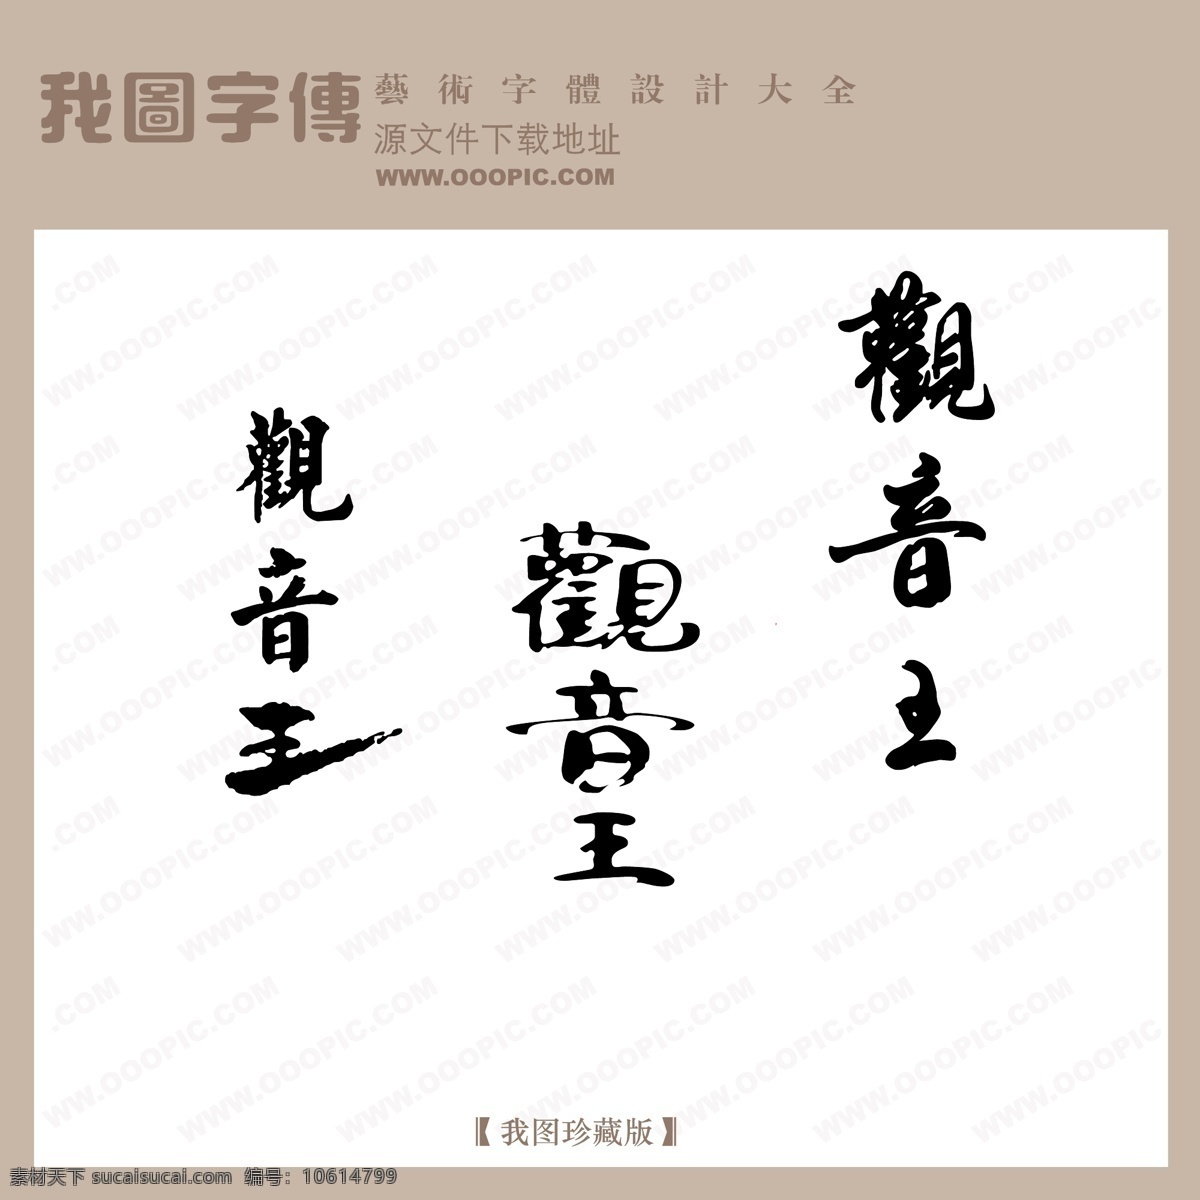 观音王 中文 古典 书法 创意 美工 艺术 字 中国字体设计 中文古典书法 矢量图